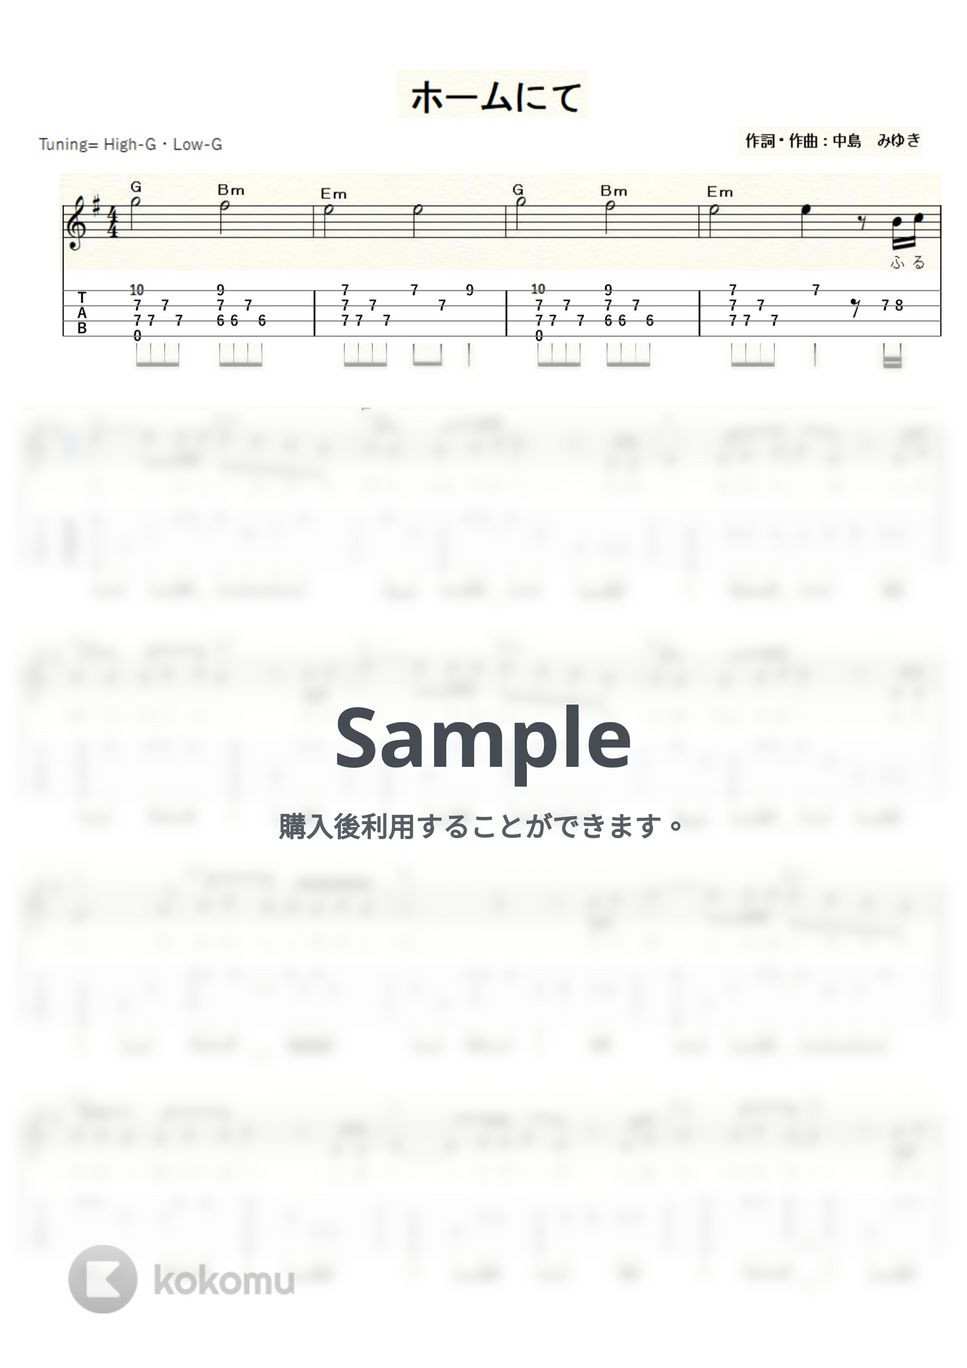 中島 みゆき - ホームにて (ｳｸﾚﾚｿﾛ/High-G・Low-G/中級) by ukulelepapa